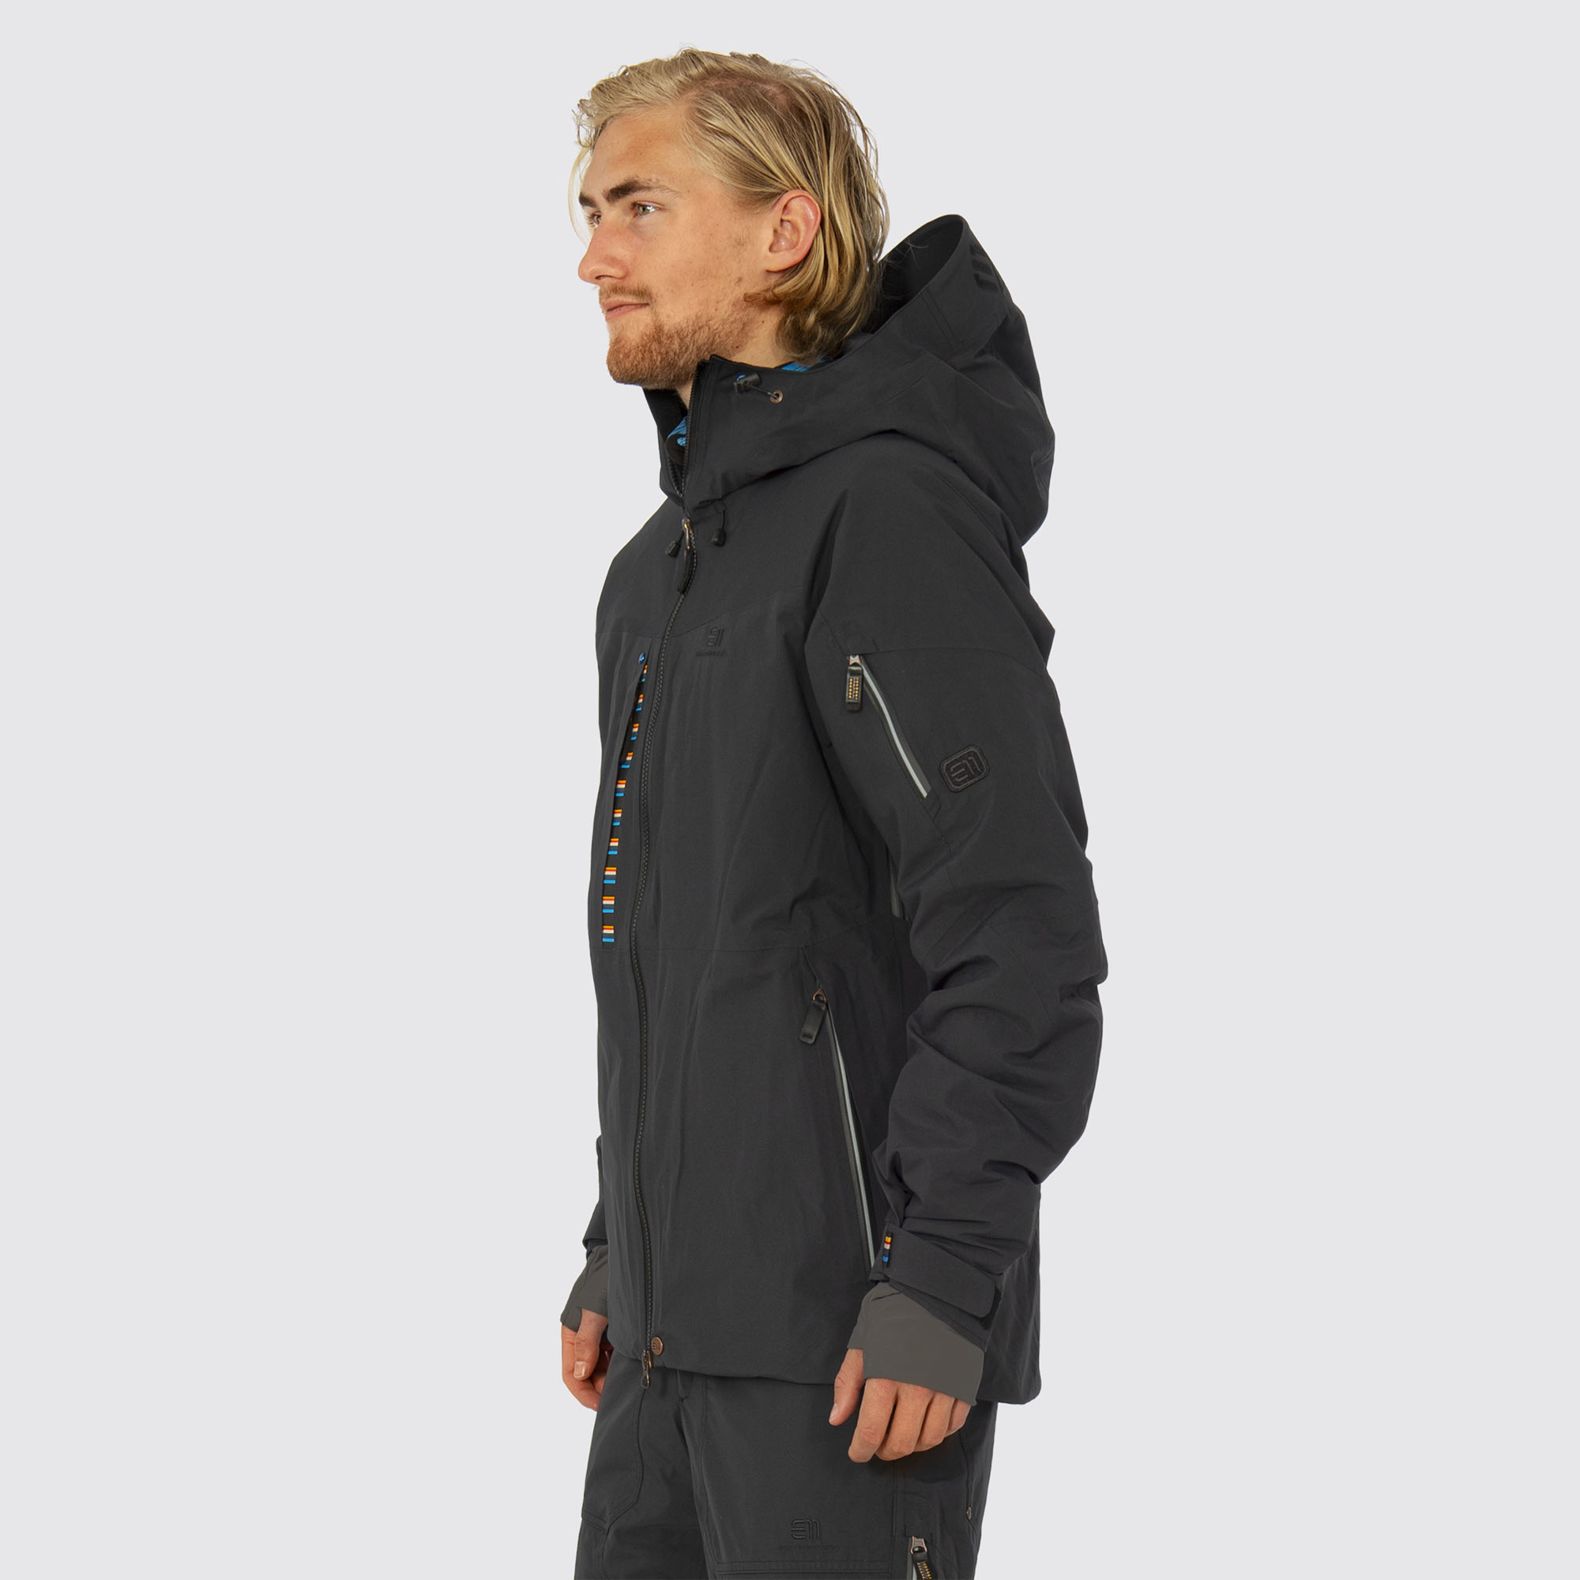 ELEVENATE Men Ski Jacket Creblet - Black rental